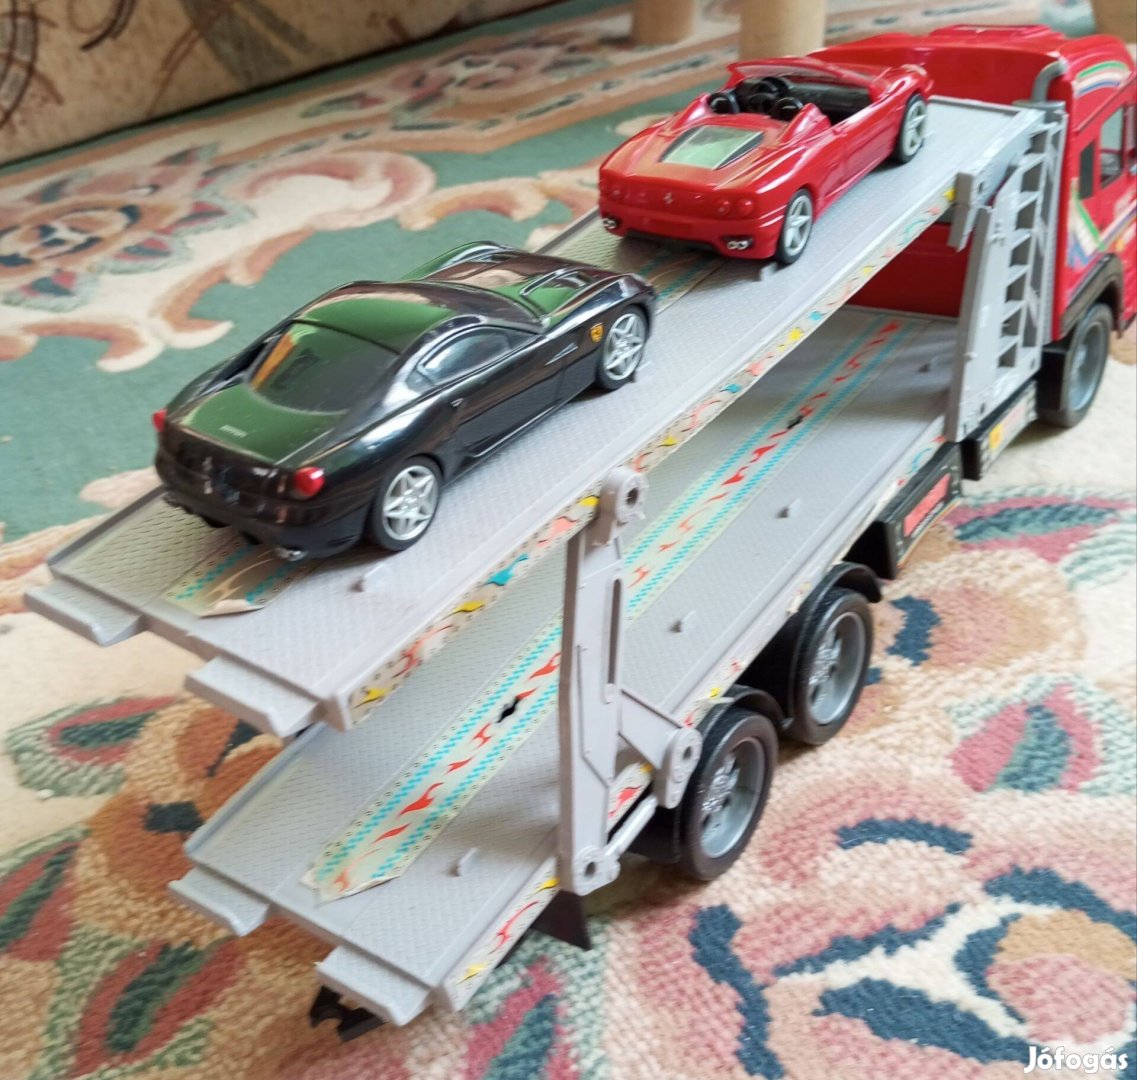 Piros autószállító kamion 2 Ferrari motoros Batman eladó Bp